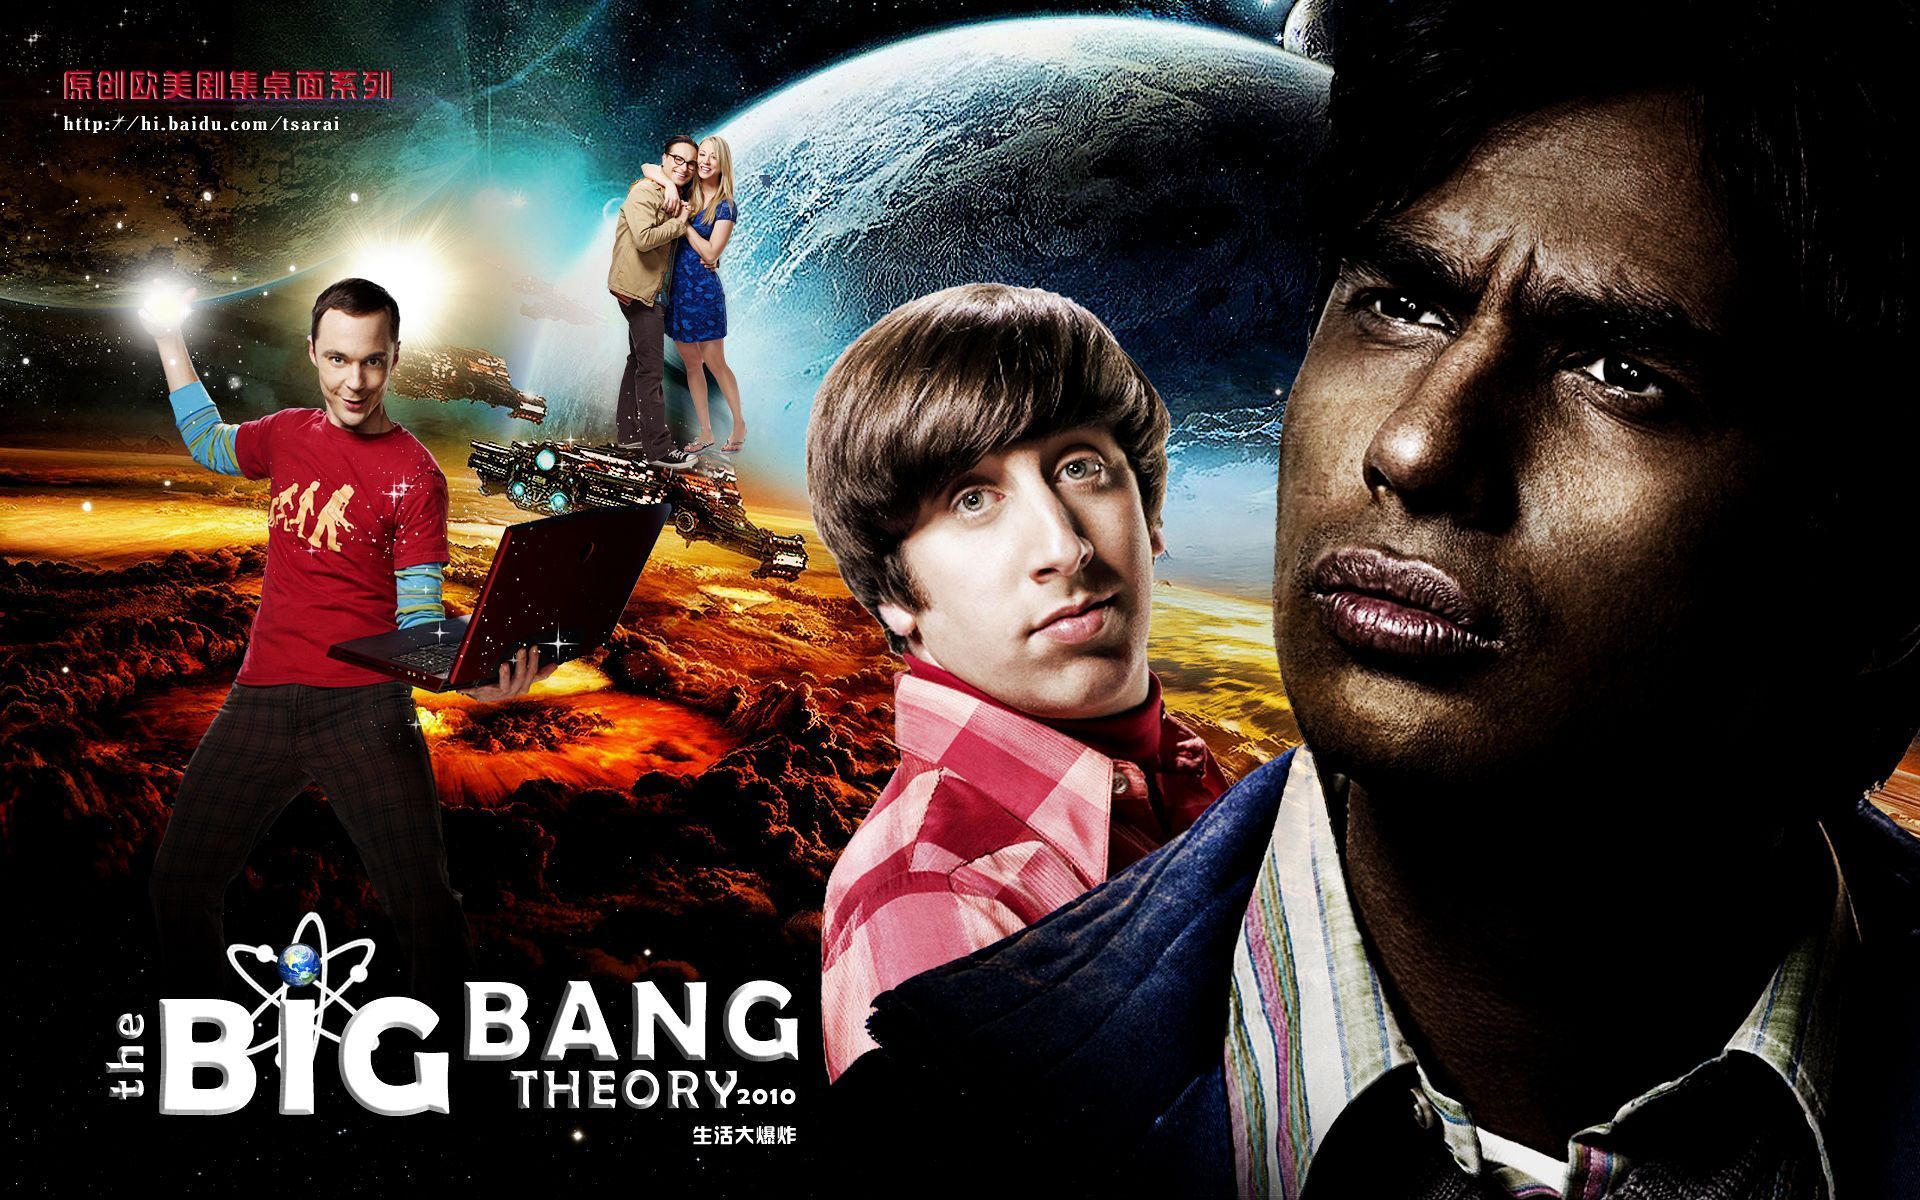 The Big Bang Theory Wallpapers  Wallpaper Cave